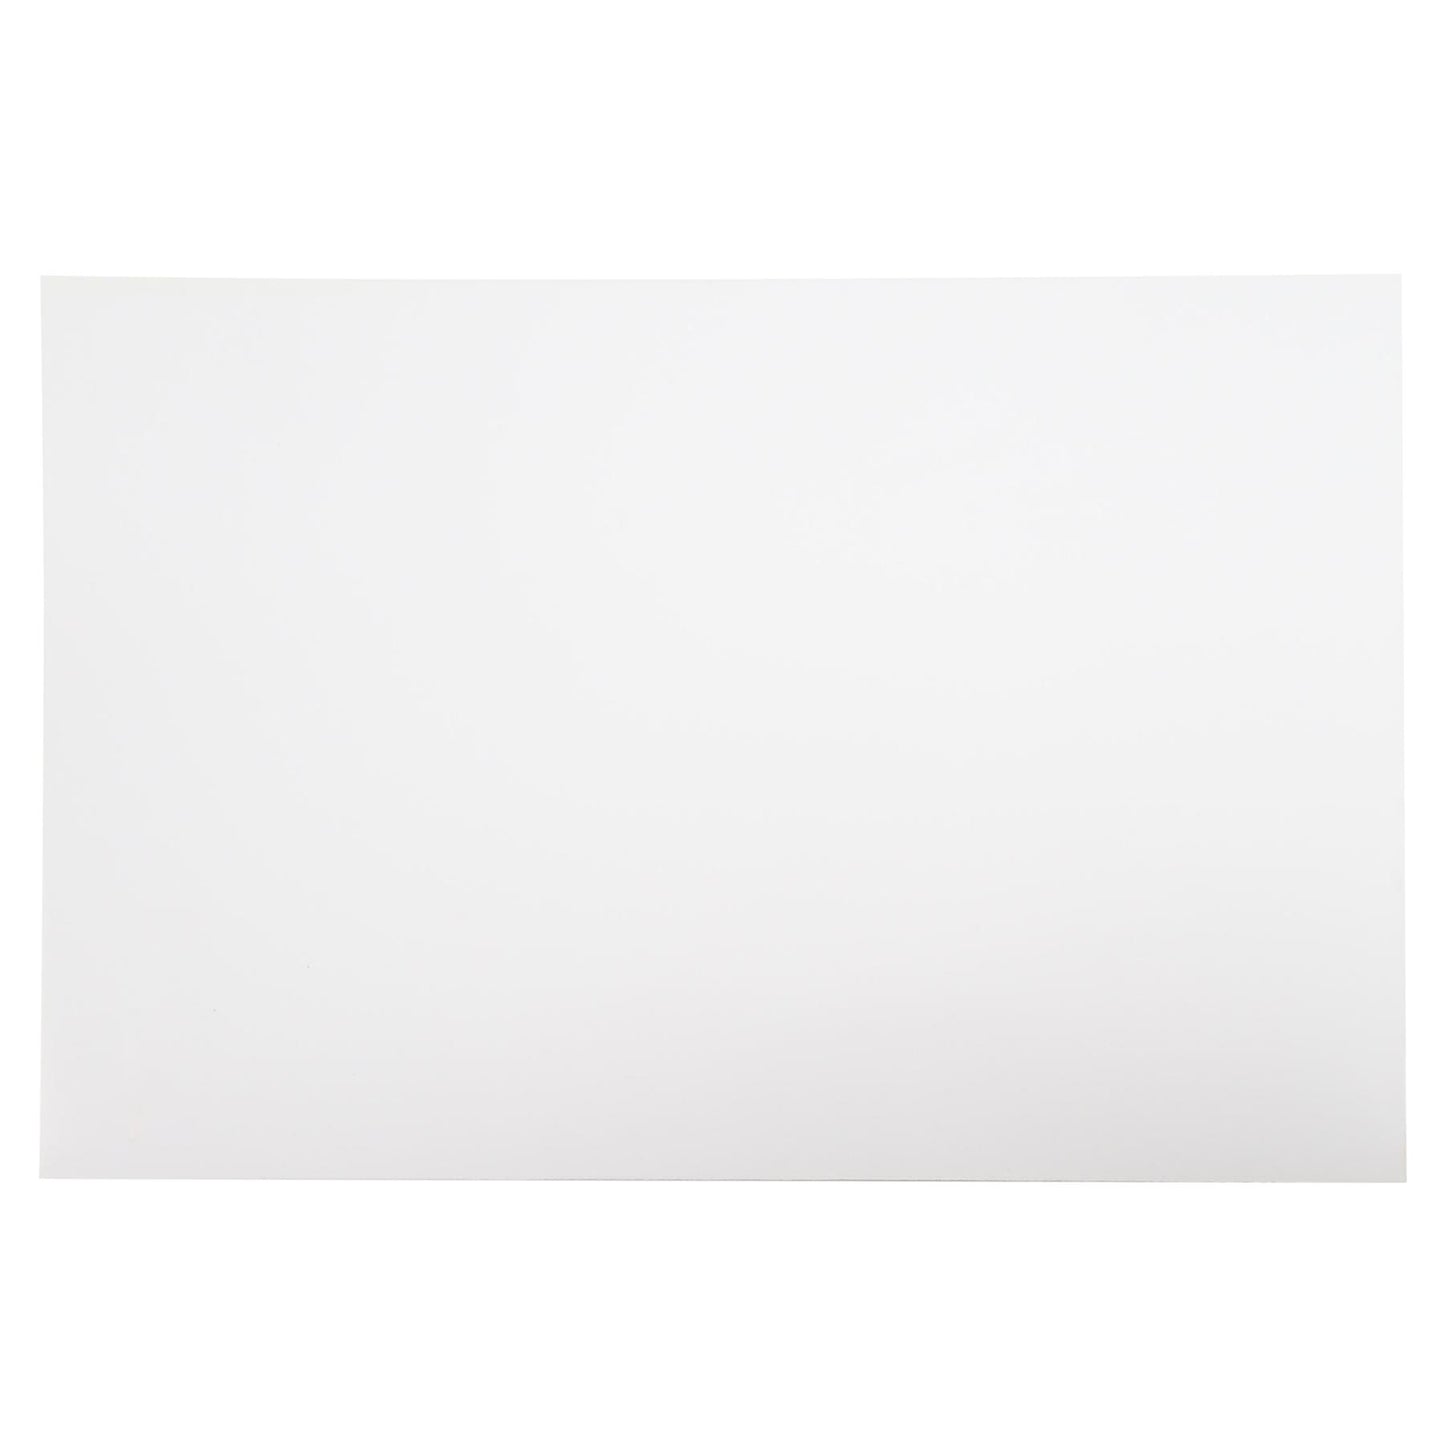 Incudo White Plain Celluloid Sheet - 380x270x1.3mm (15x10.63x0.05")